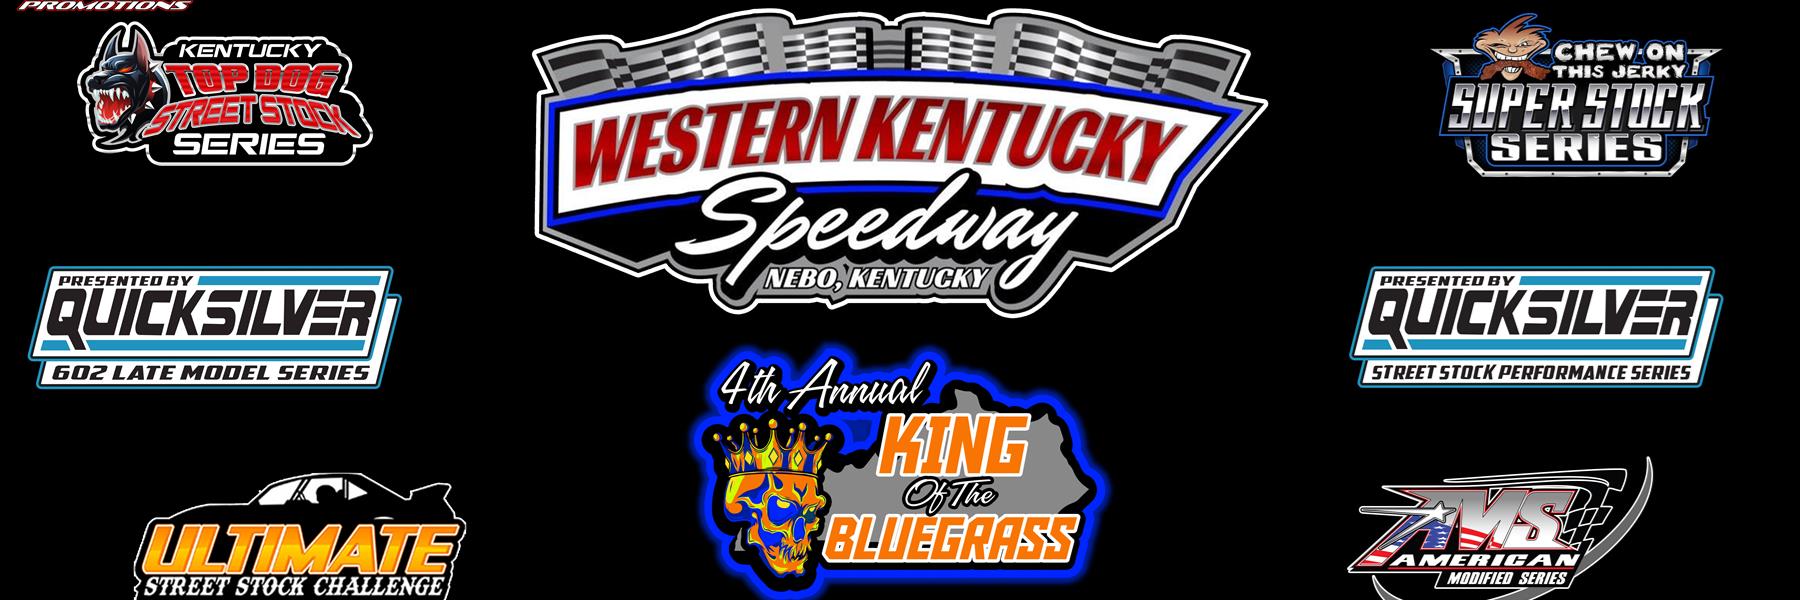 9/8/2022 - Western Kentucky Speedway